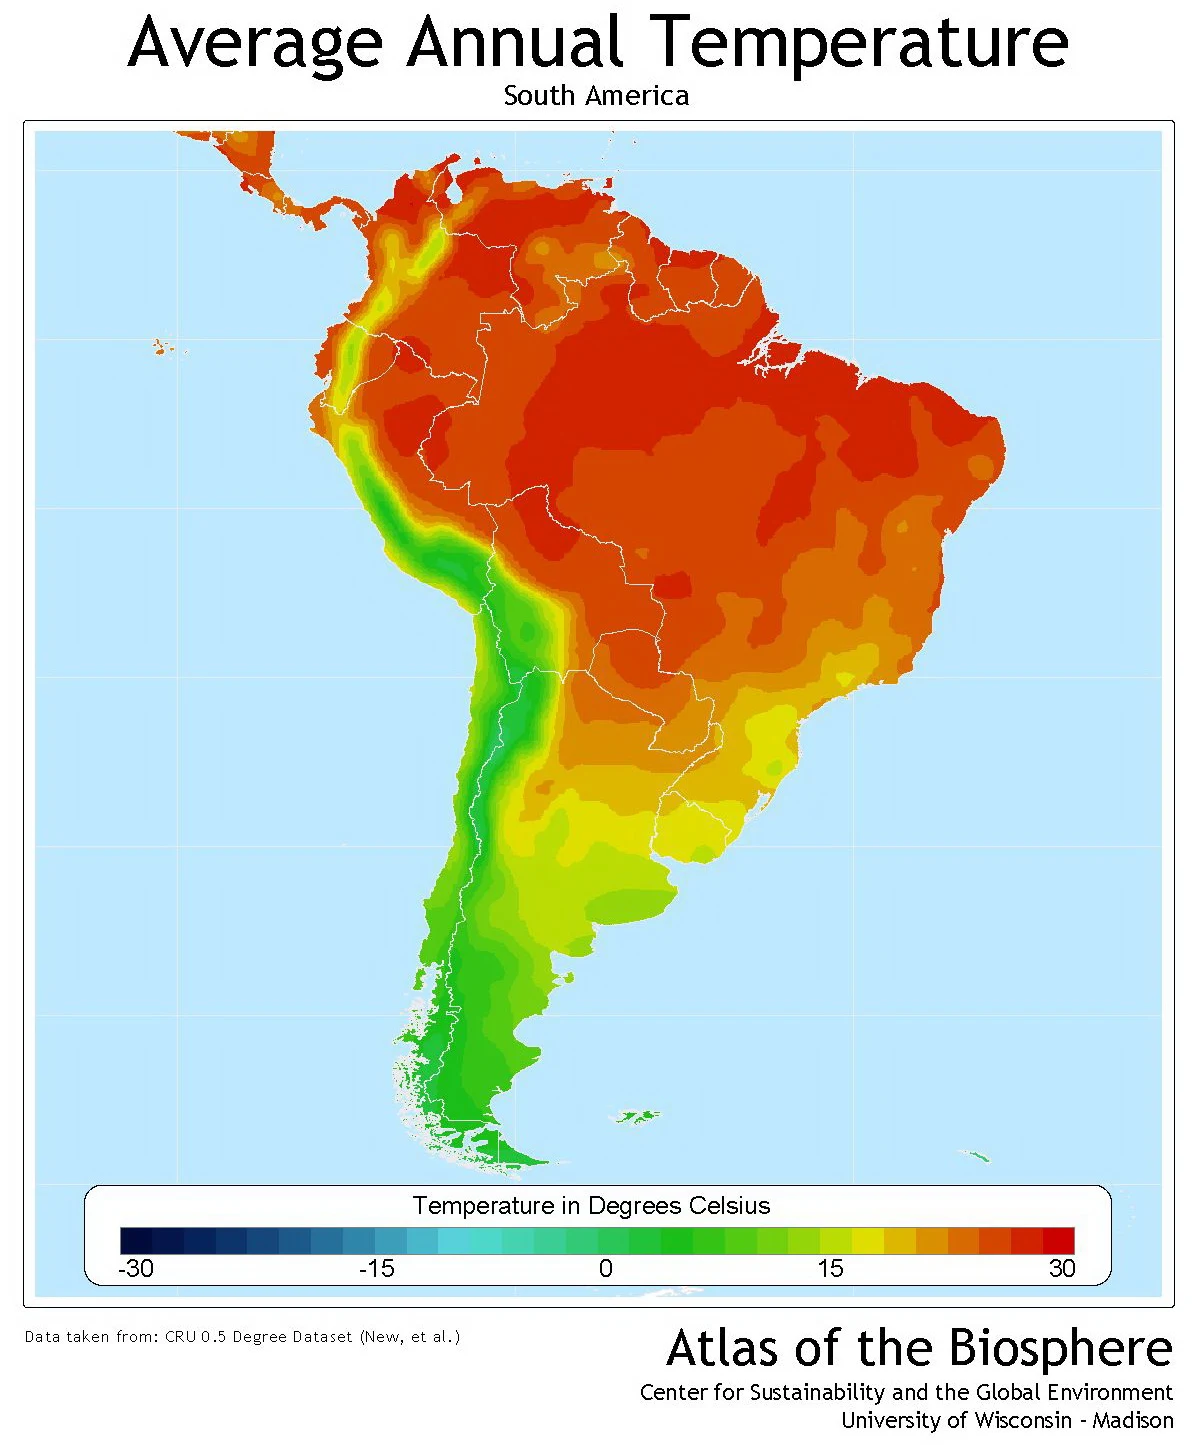 South America average annual temperature